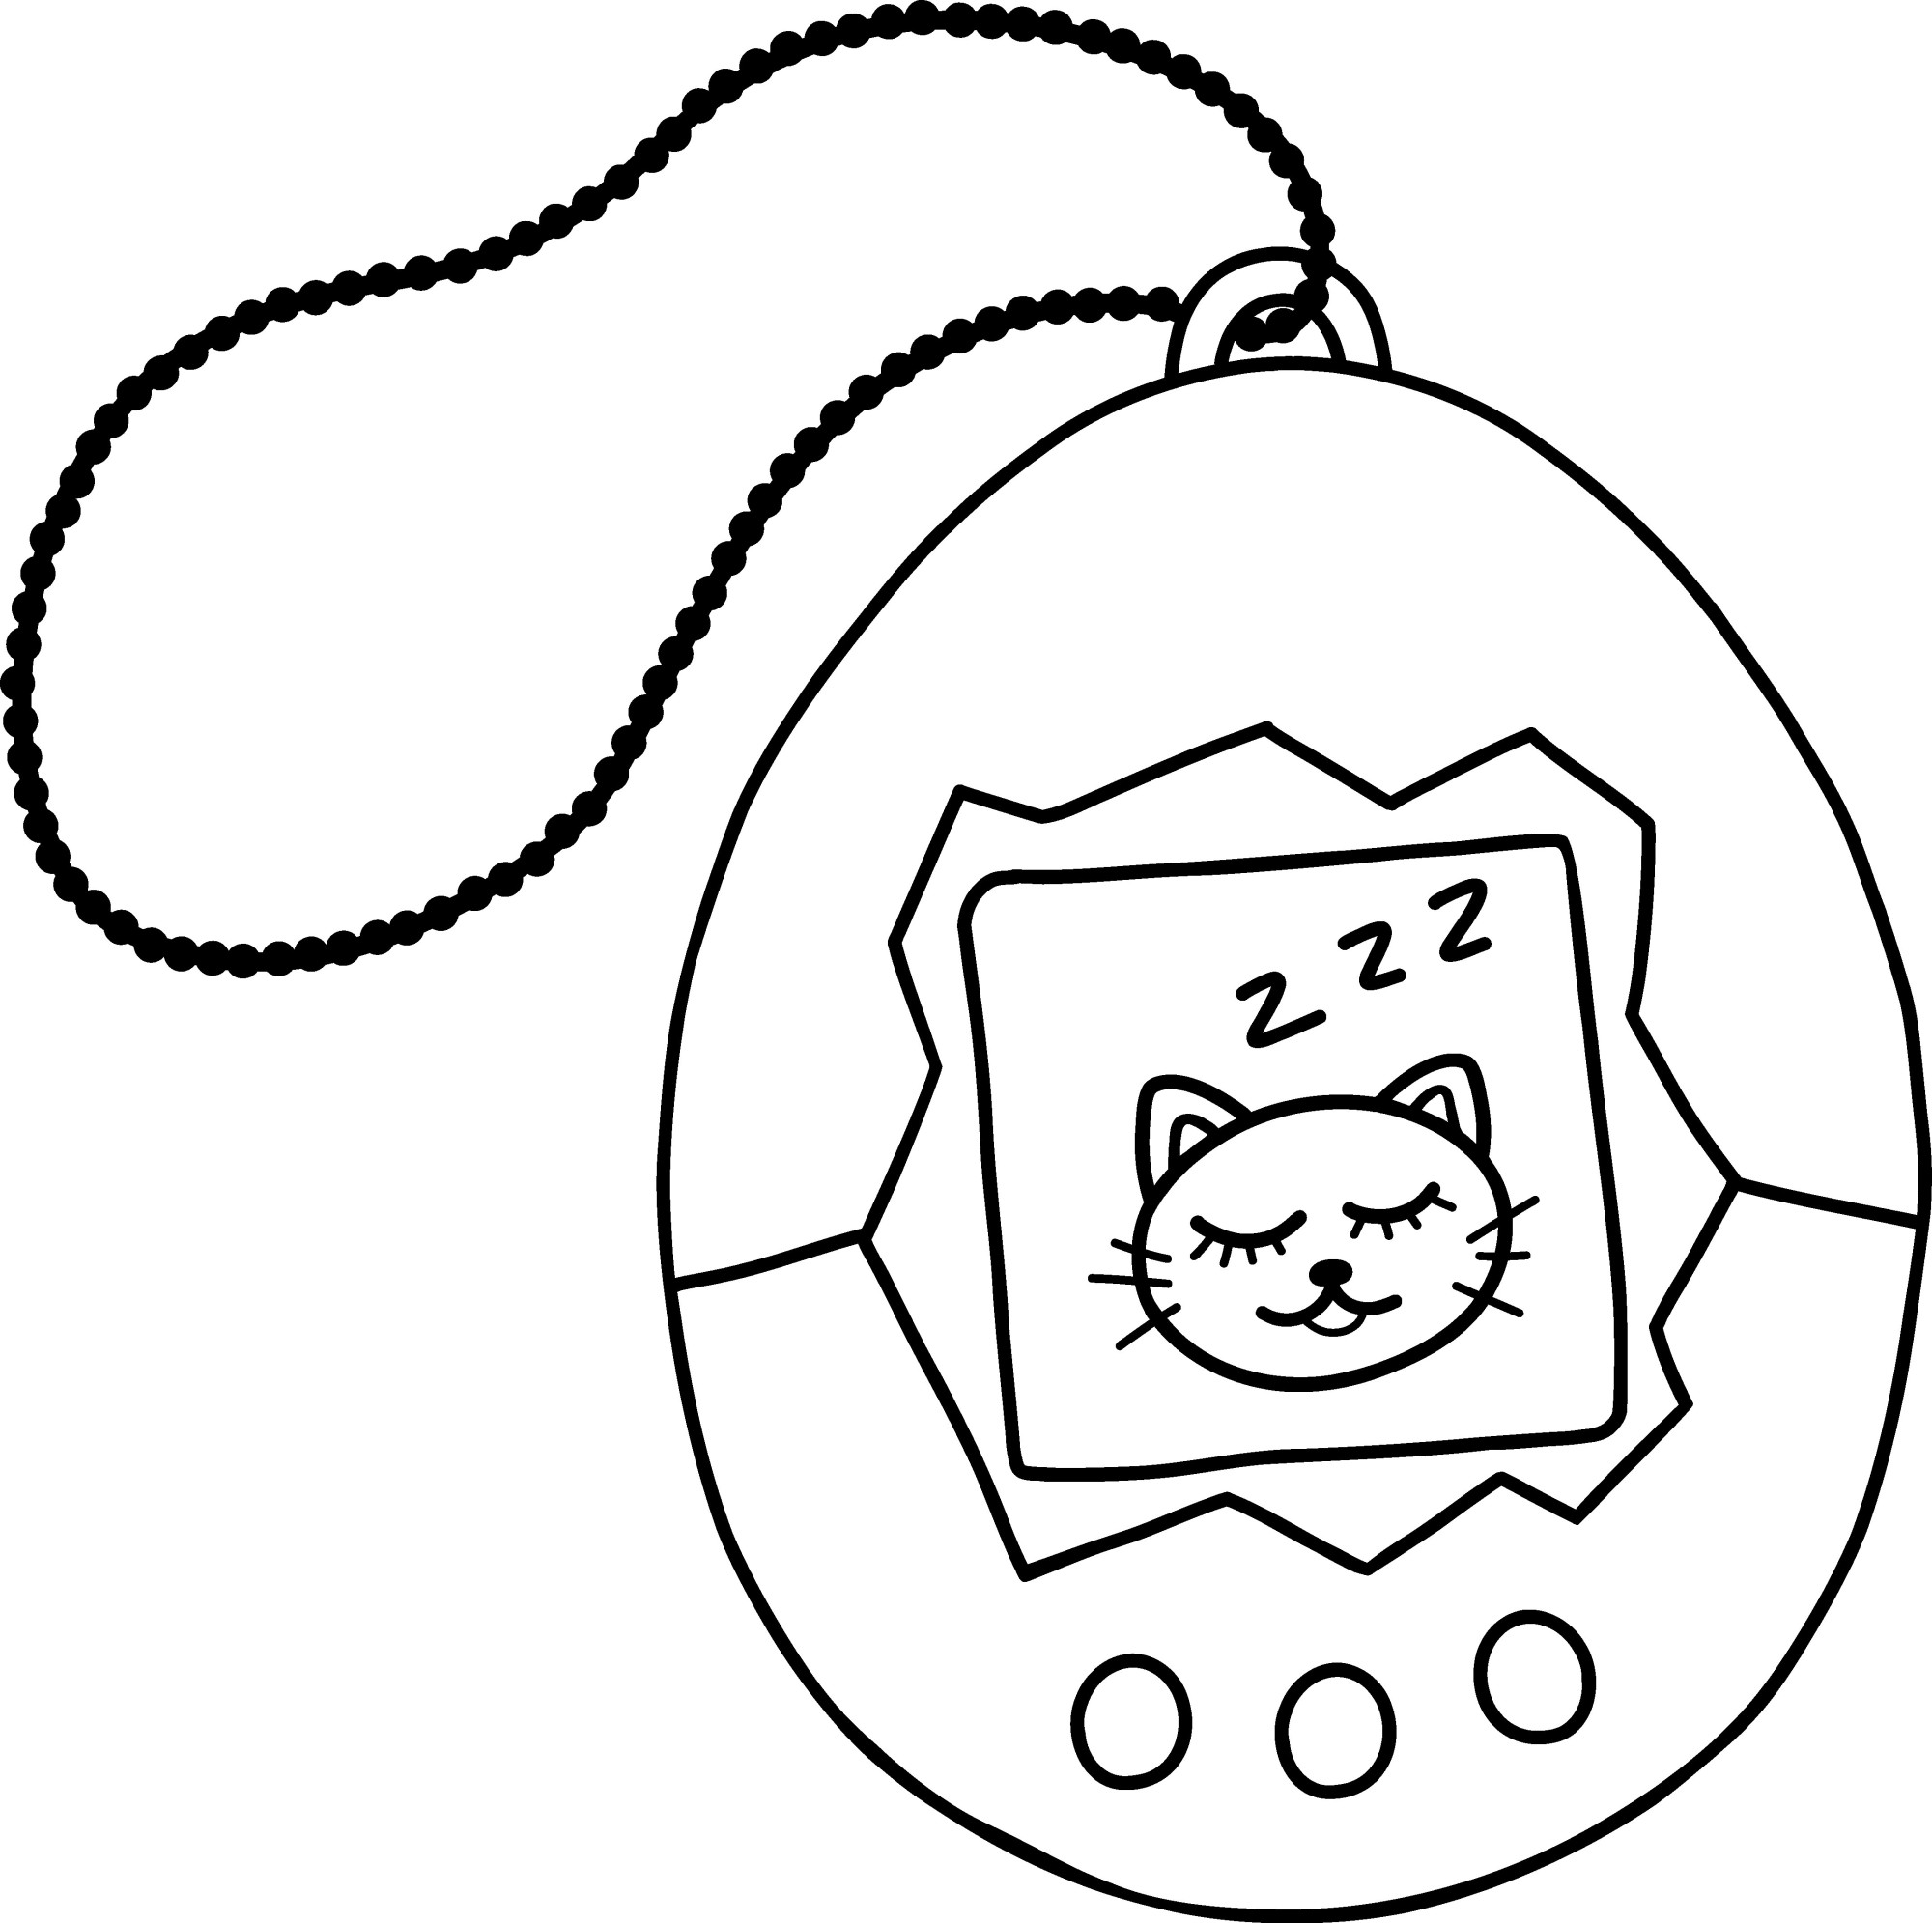 Раскраска для детей: игрушка тамагочи с котиком